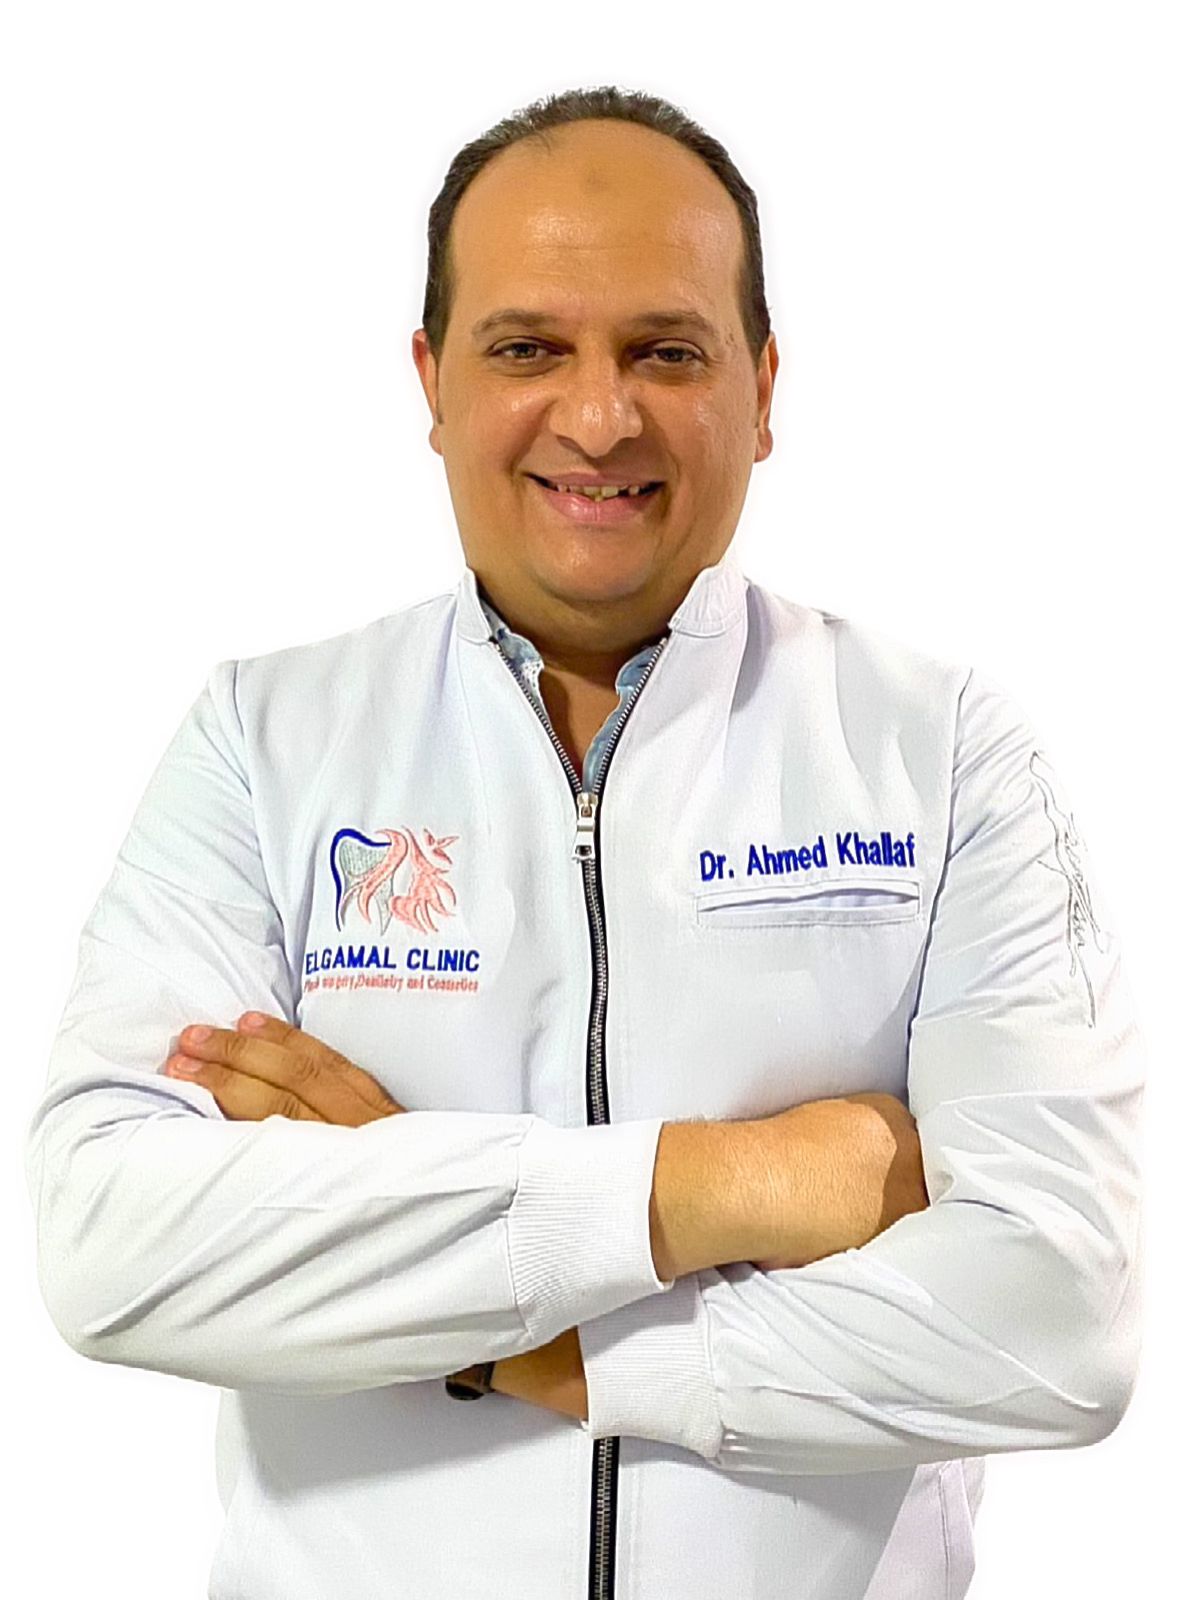 Dr. Ahmed Atef Khallaf